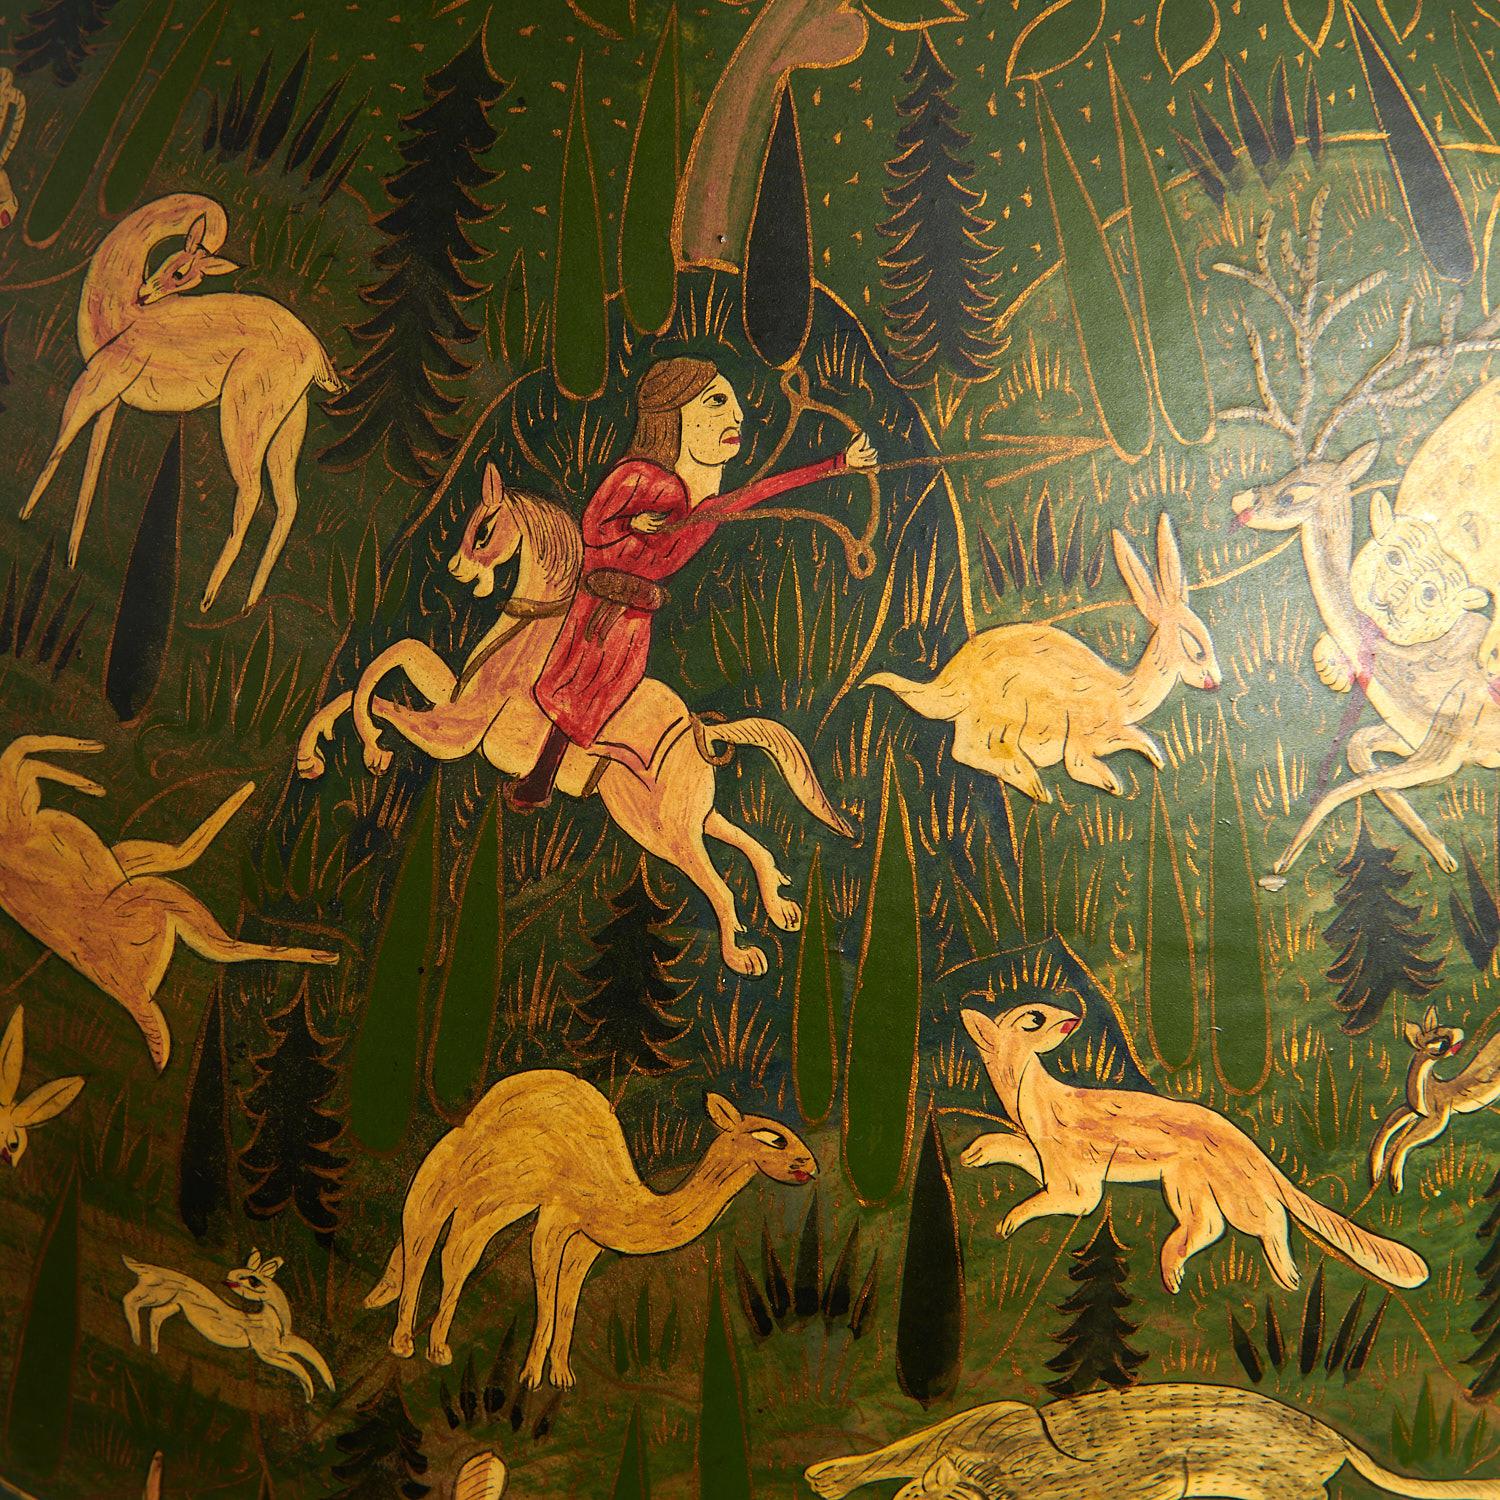 c. années 1950, lampe en coco de grande taille en forme de gourde, décorée à la main de gazelles, lions et chasseurs à cheval sur fond vert, raccords en laiton. La peinture est accentuée par des éléments peints en or. Le poids et la décoration de